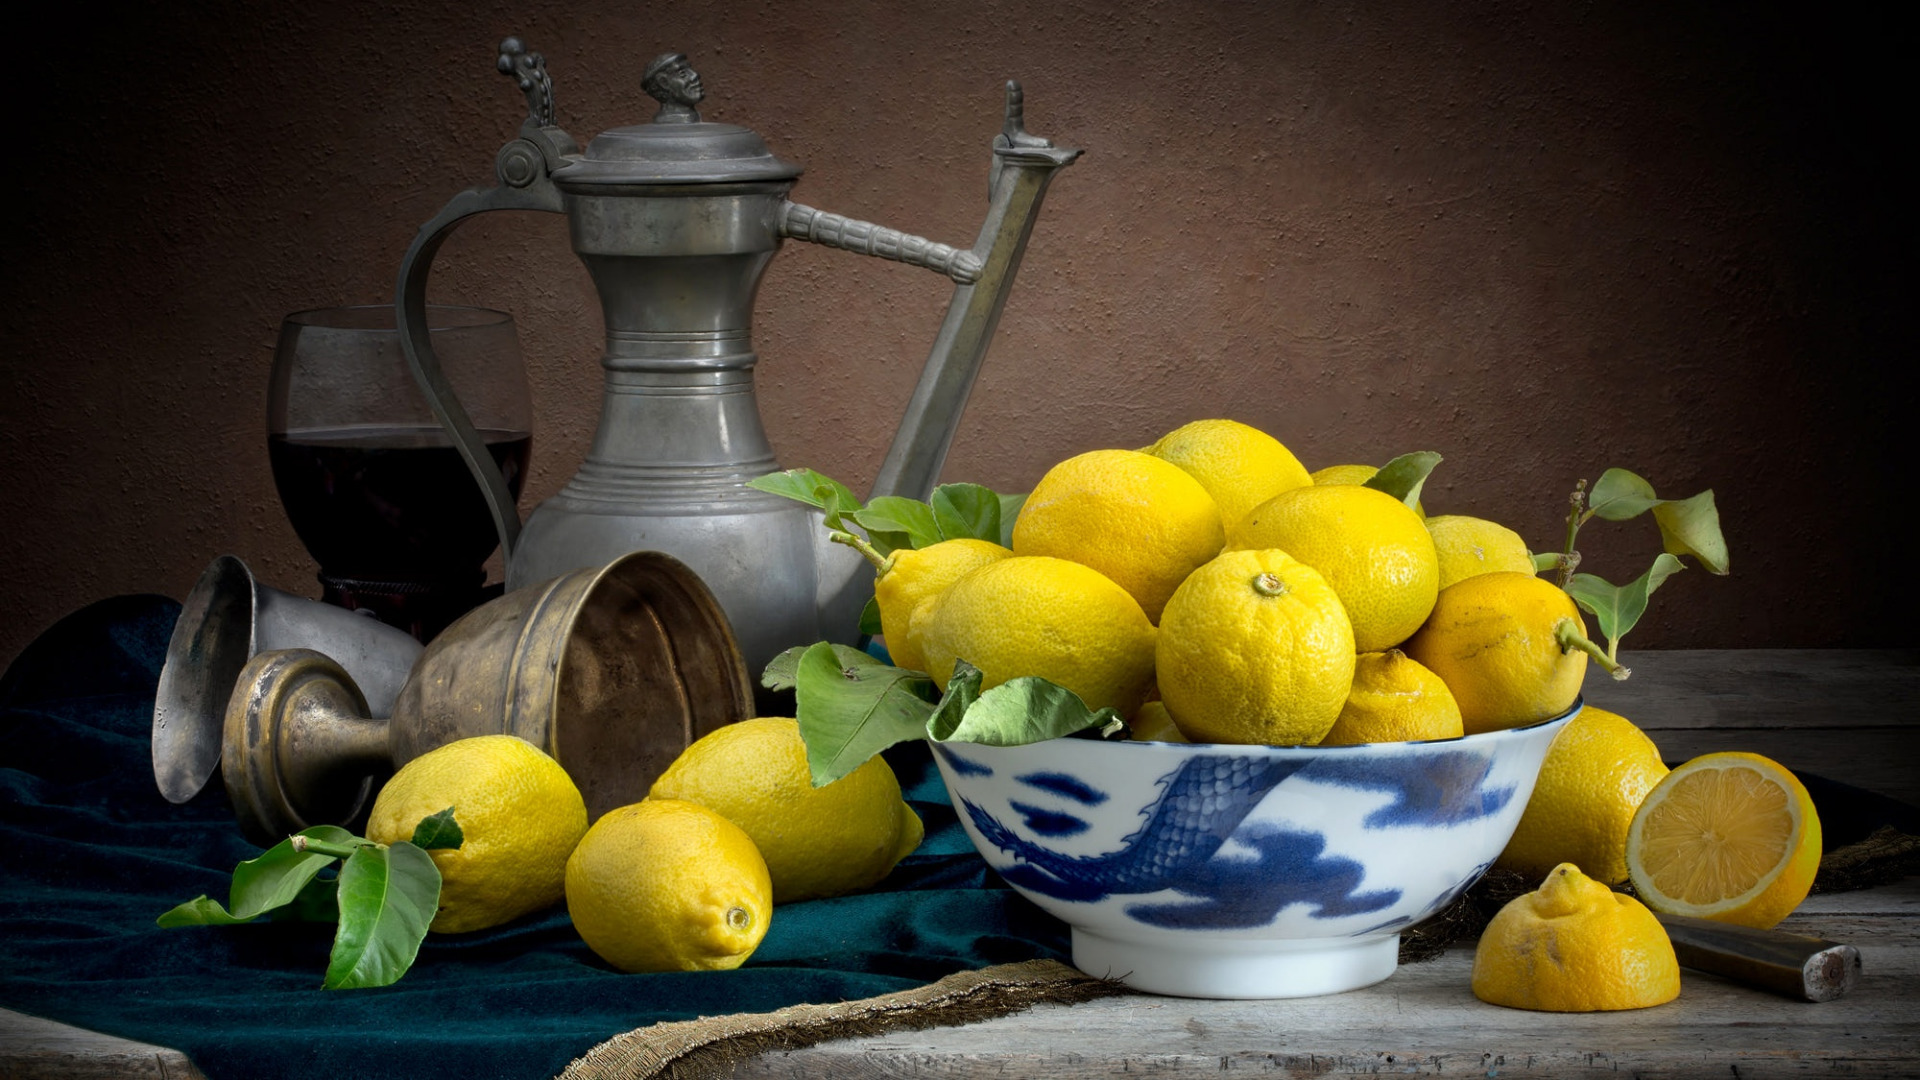 عکس استوک قدیمی از ظرف چینی گلدار آبی با لیمو های طلایی